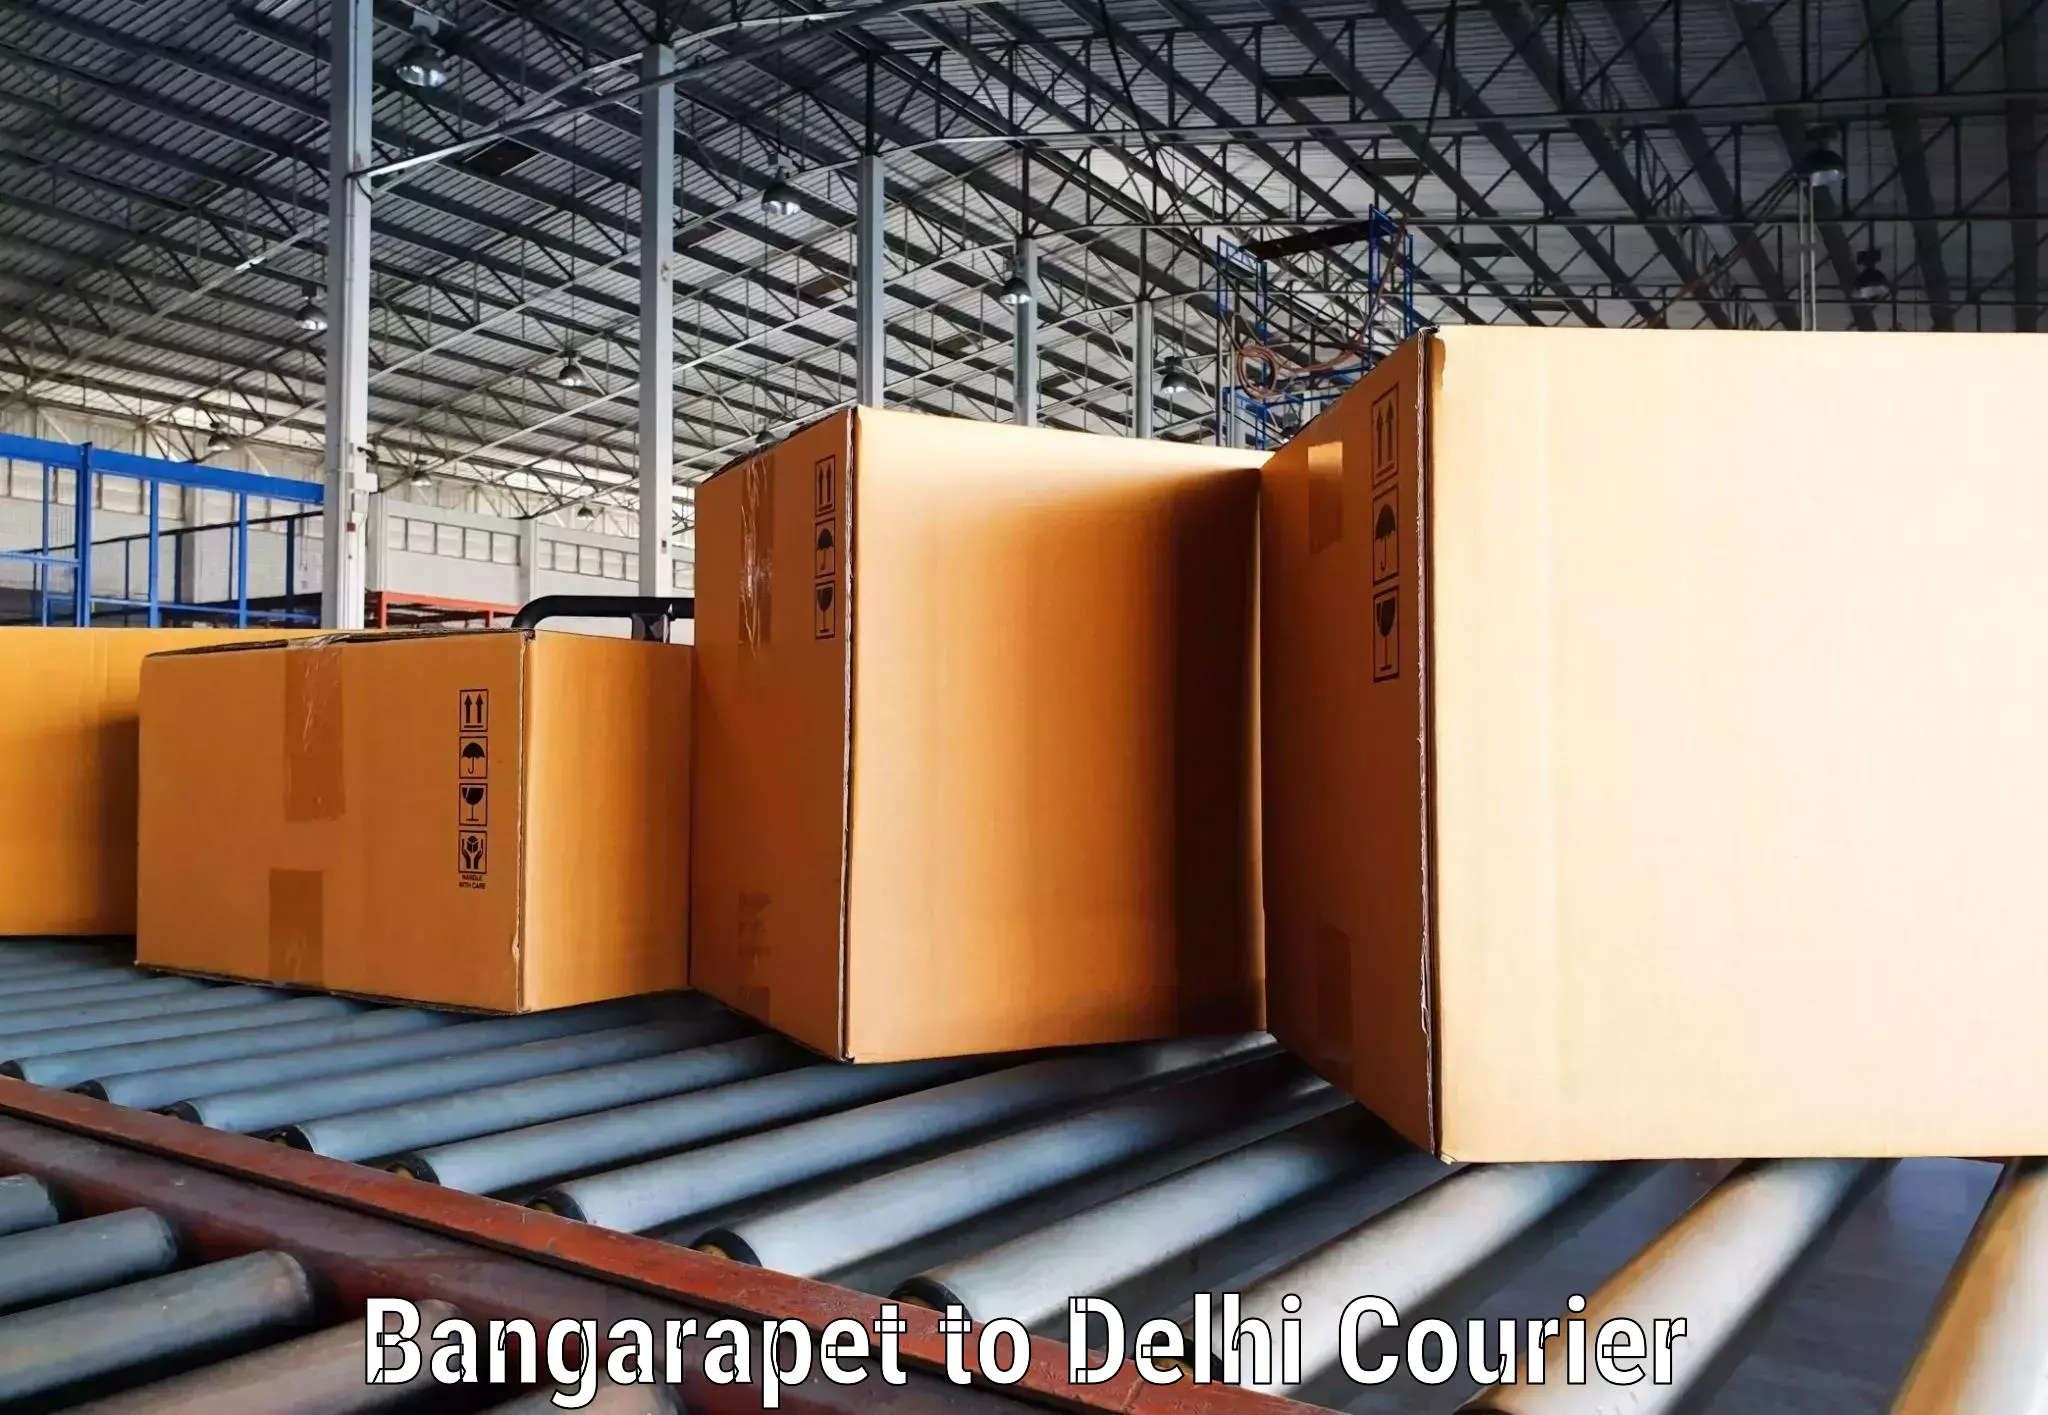 Cargo delivery service Bangarapet to Delhi